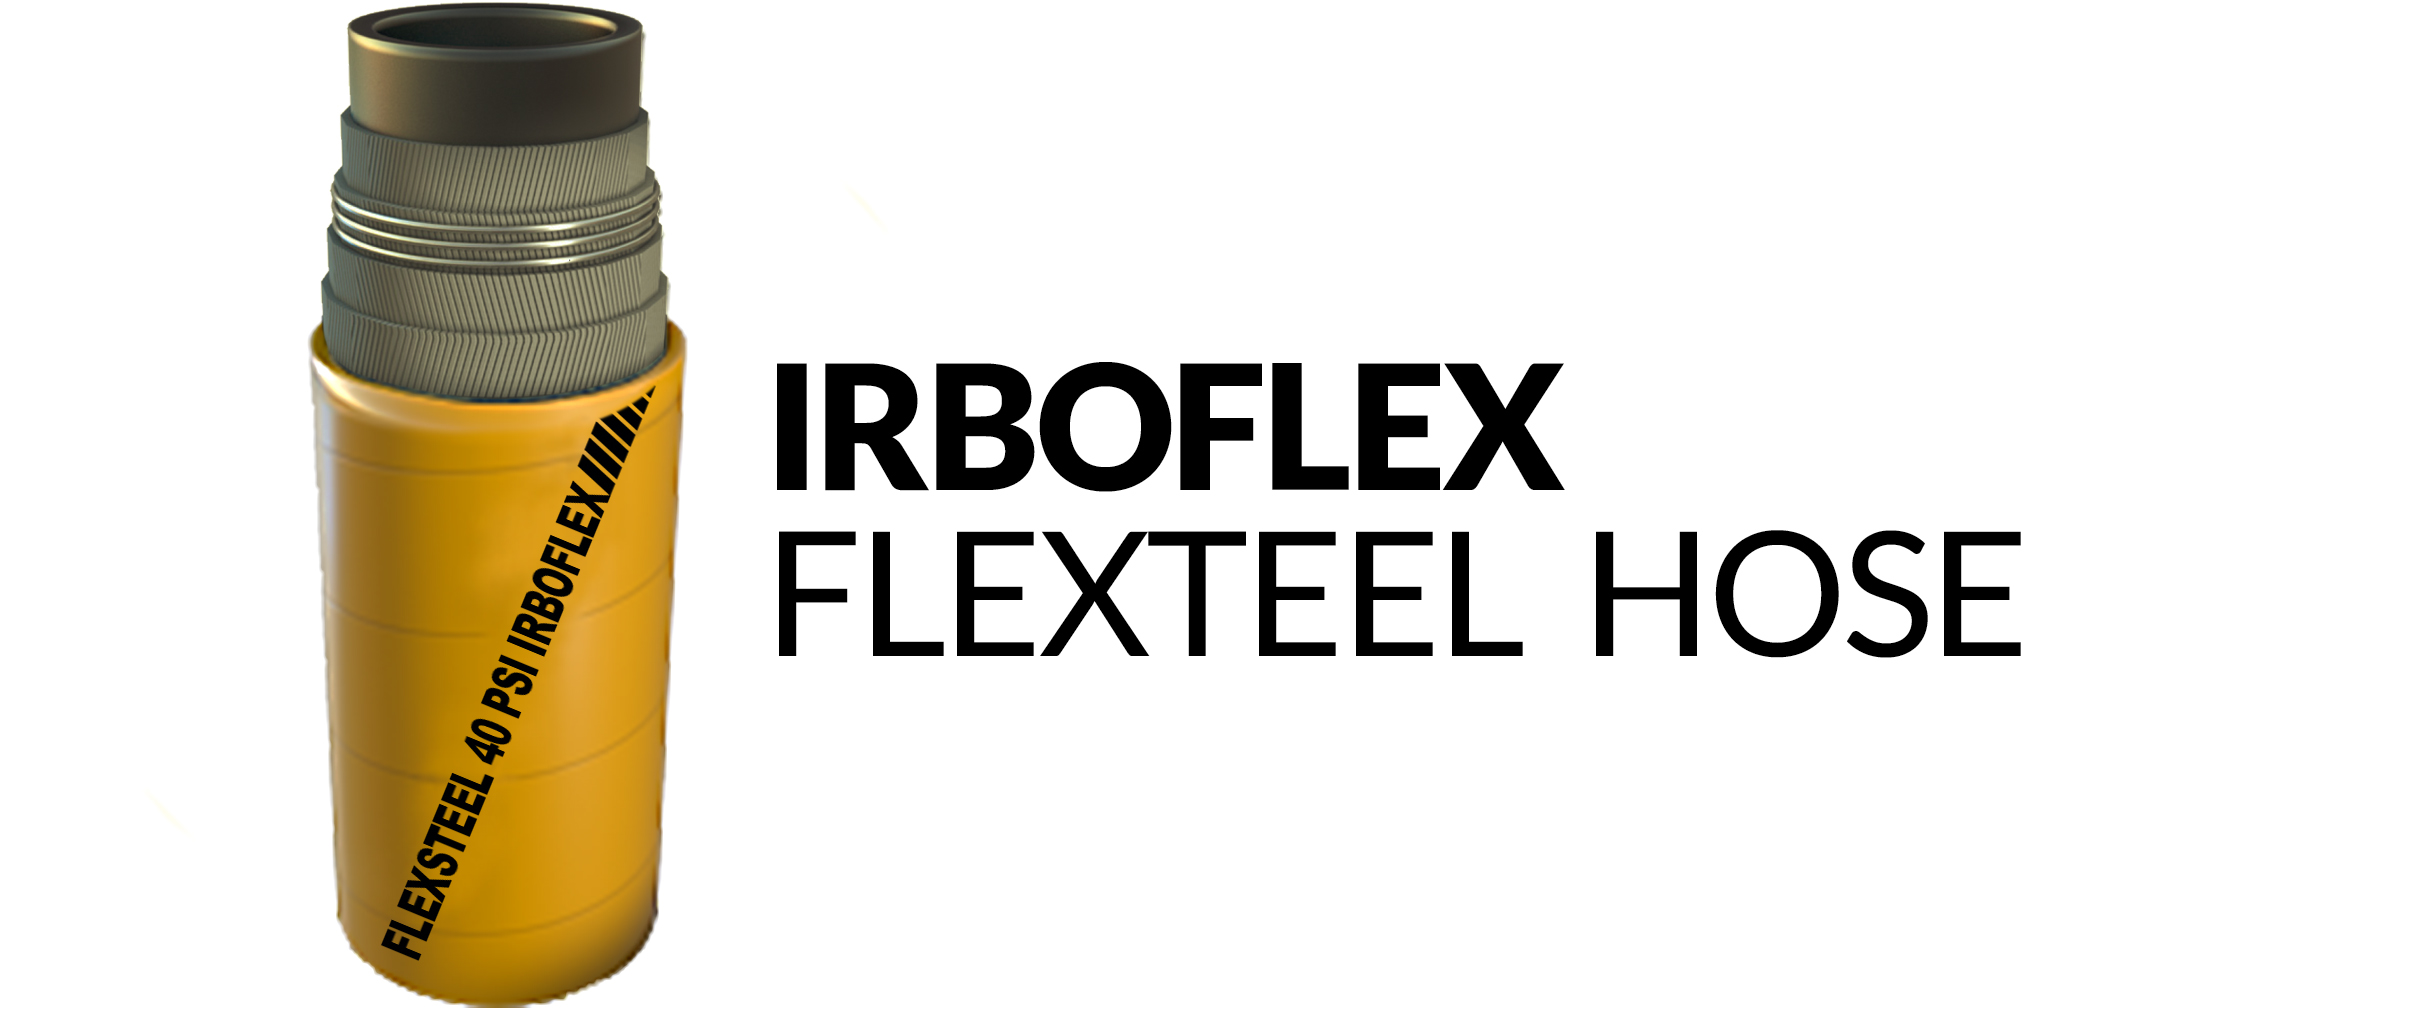 flexsteel-40-psi-irboflex-flexteel-hose-copia